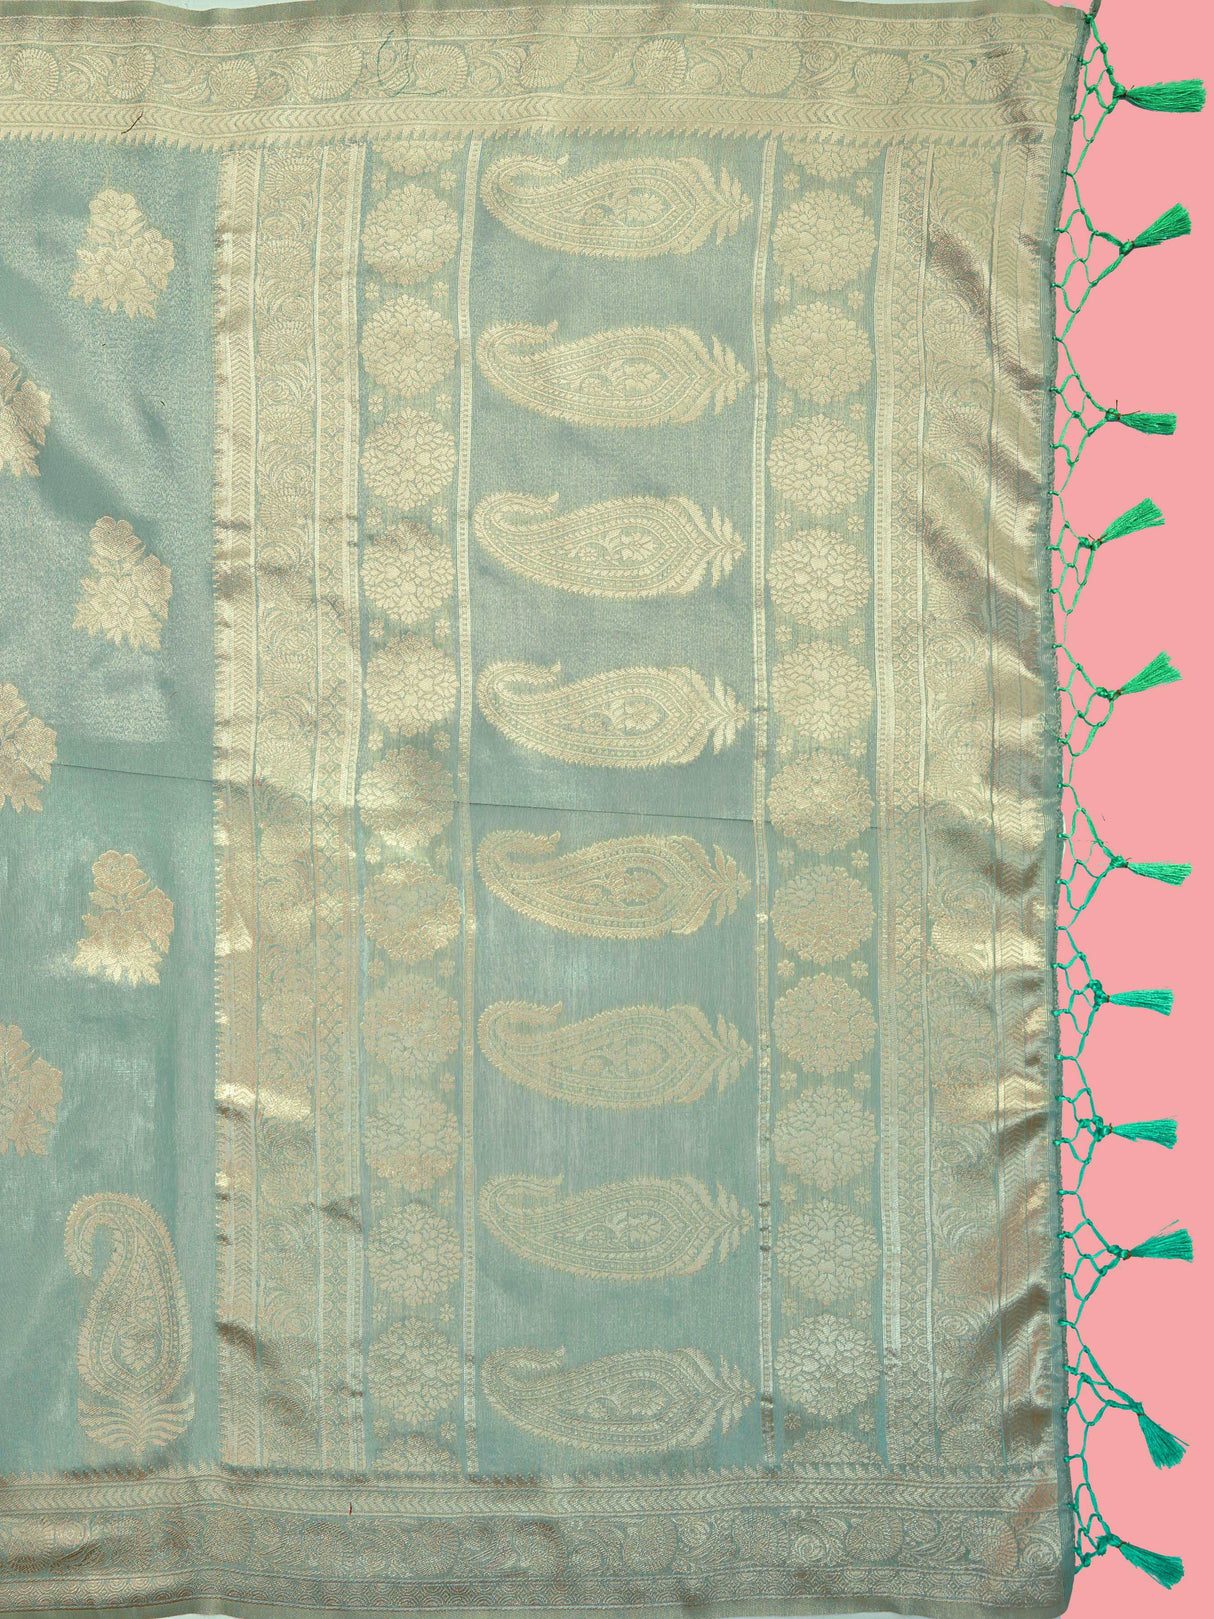 Mimosa Women's Woven Design Banarasi Art Silk Saree With Blouse Piece : SA00001217ANFREE